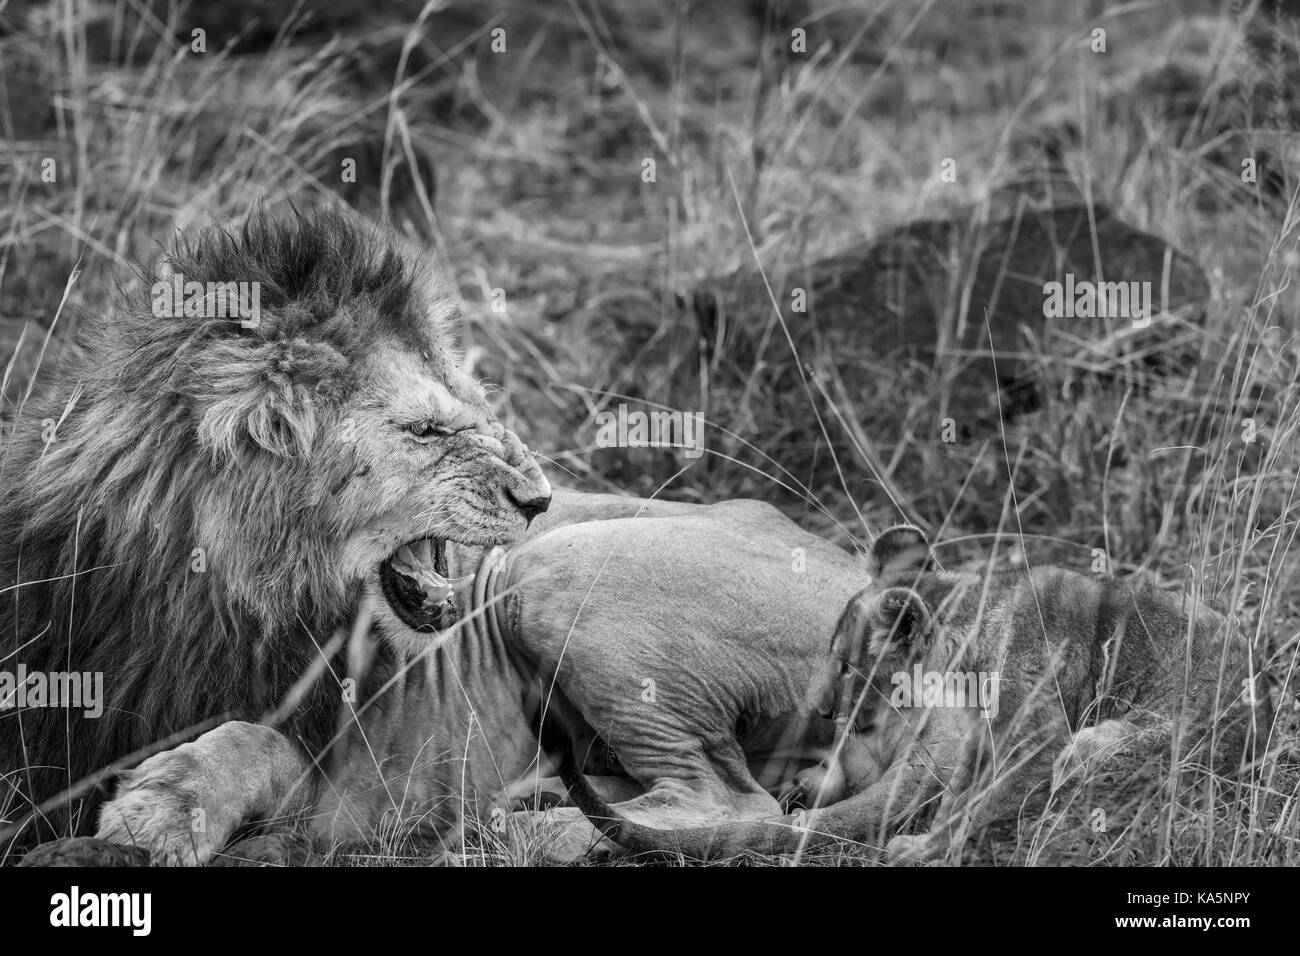 Knurrender Löwe: Aggressive Männchen Masra Löwe (Panthera leo) seine Zähne zeigt, wie es Growls und knurrt bei einer Geduckten lion Cub, Masai Mara, Kenia Stockfoto